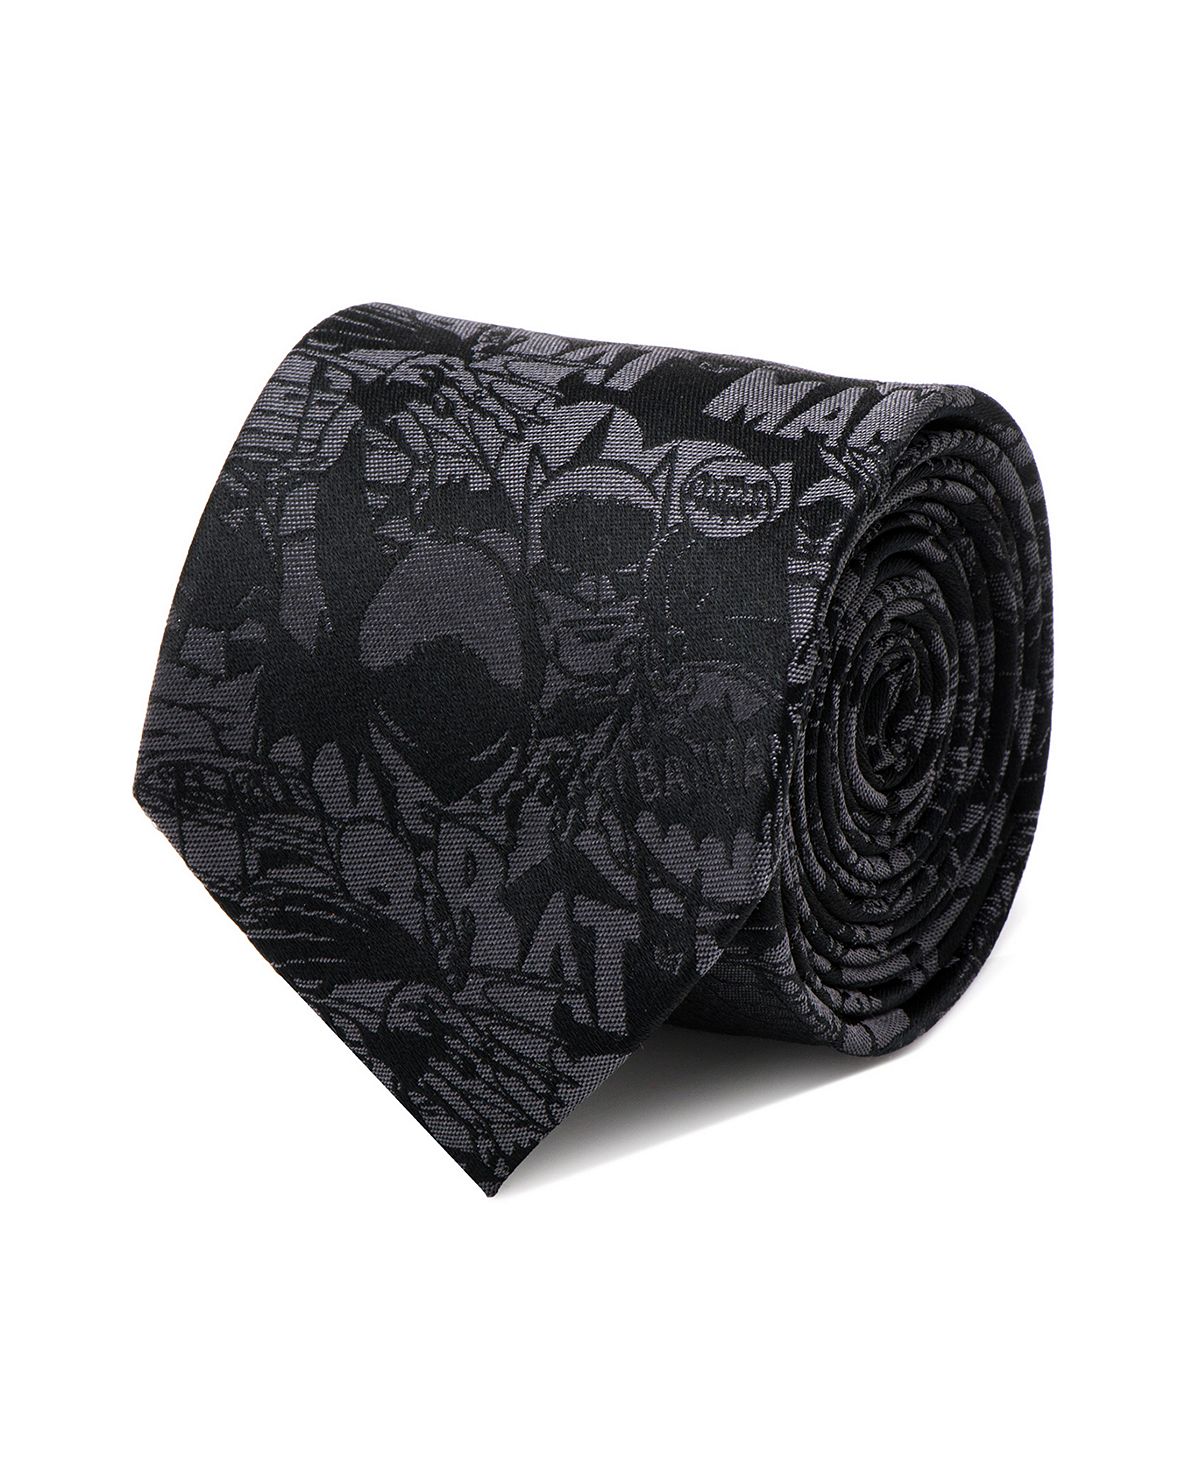 Мужской галстук с комиксами Бэтмен DC Comics галстук хаки черно серый 6см